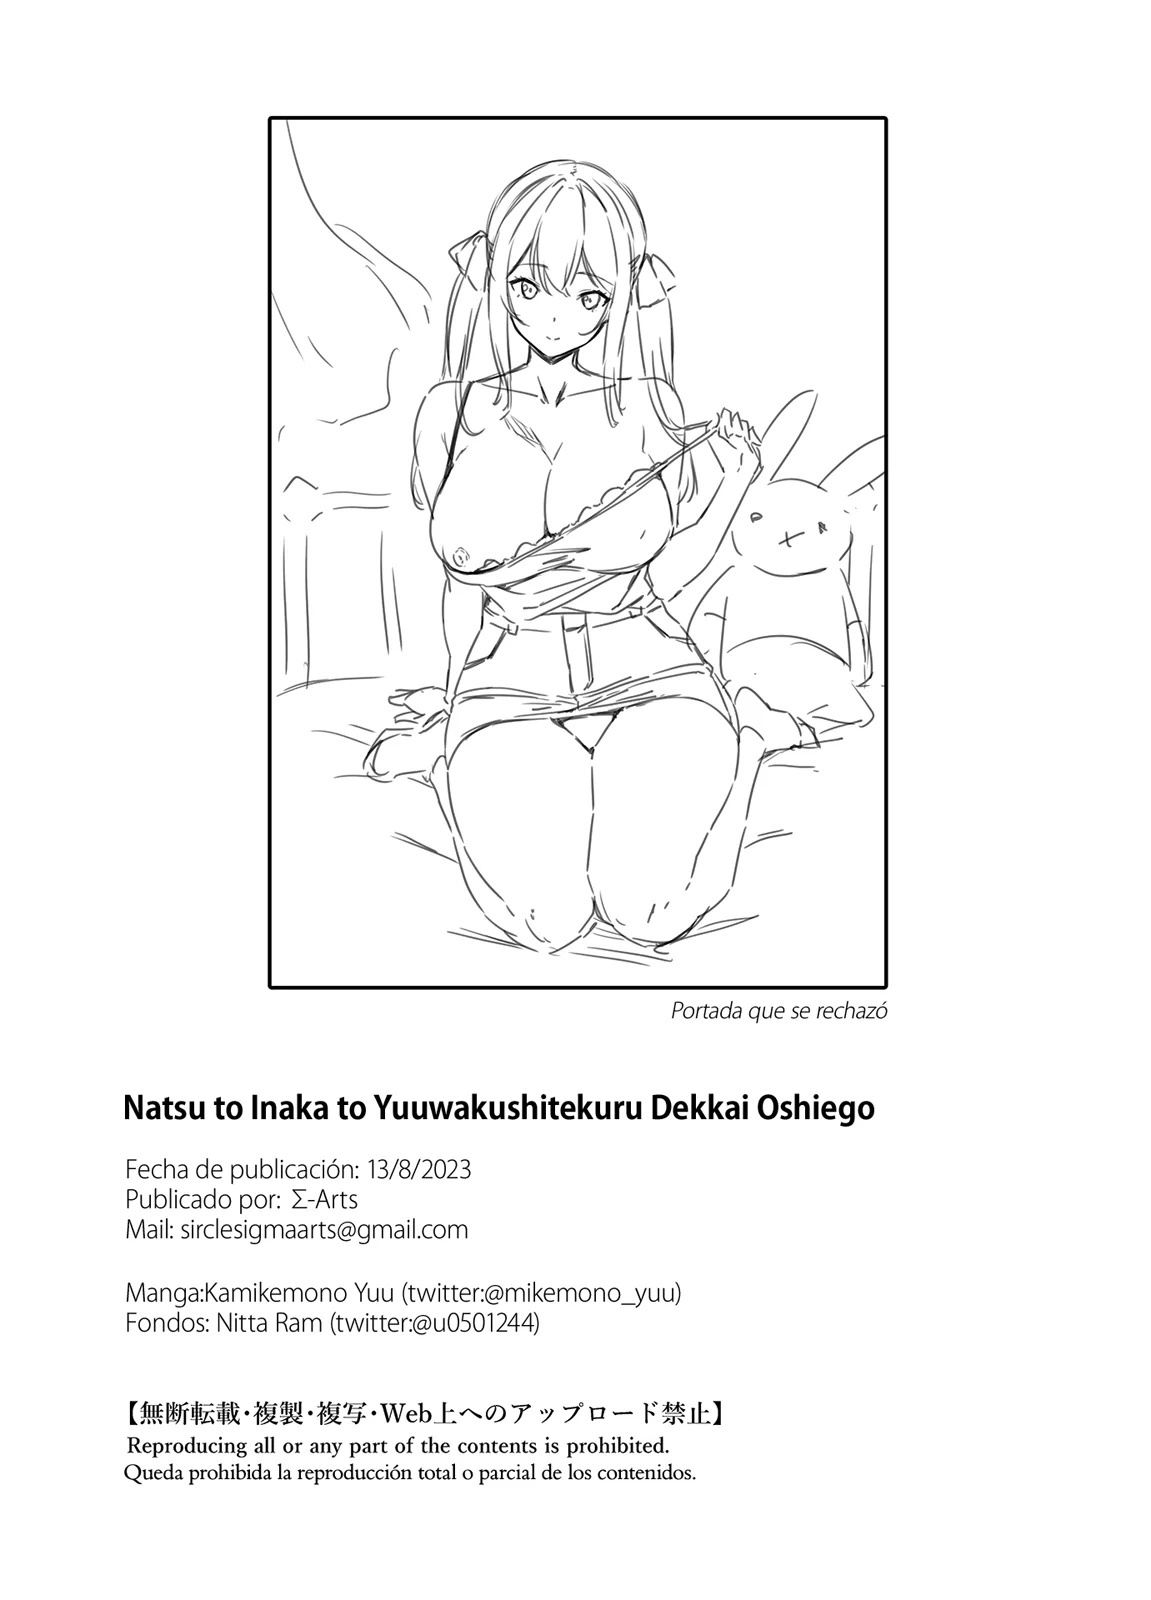 El Verano el campo y la enorme alumna seductora (Natsu to Inaka to Yuuwakushitekuru Dekkai Oshiego) - 49